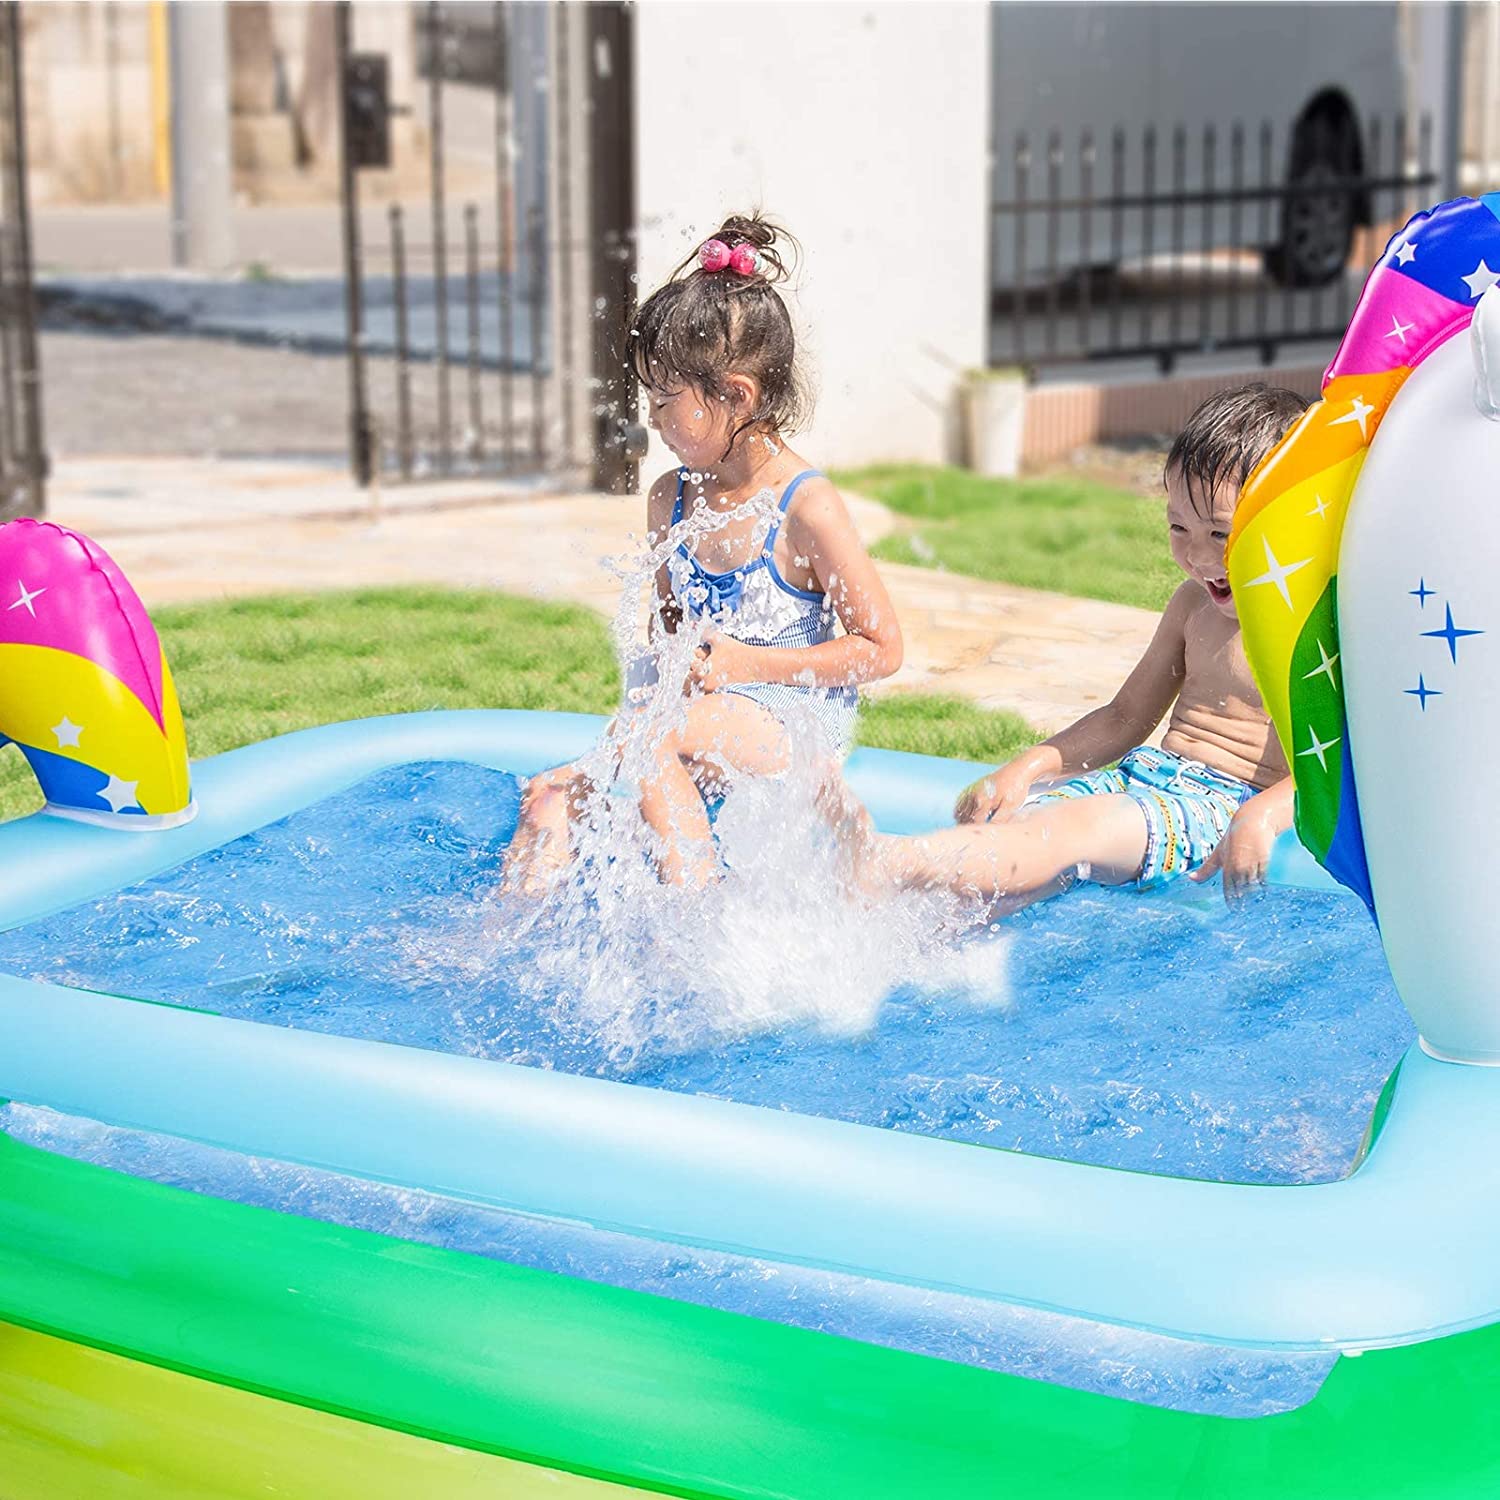 Ayeboovi Wear Resistant Inflatable Splash Pad